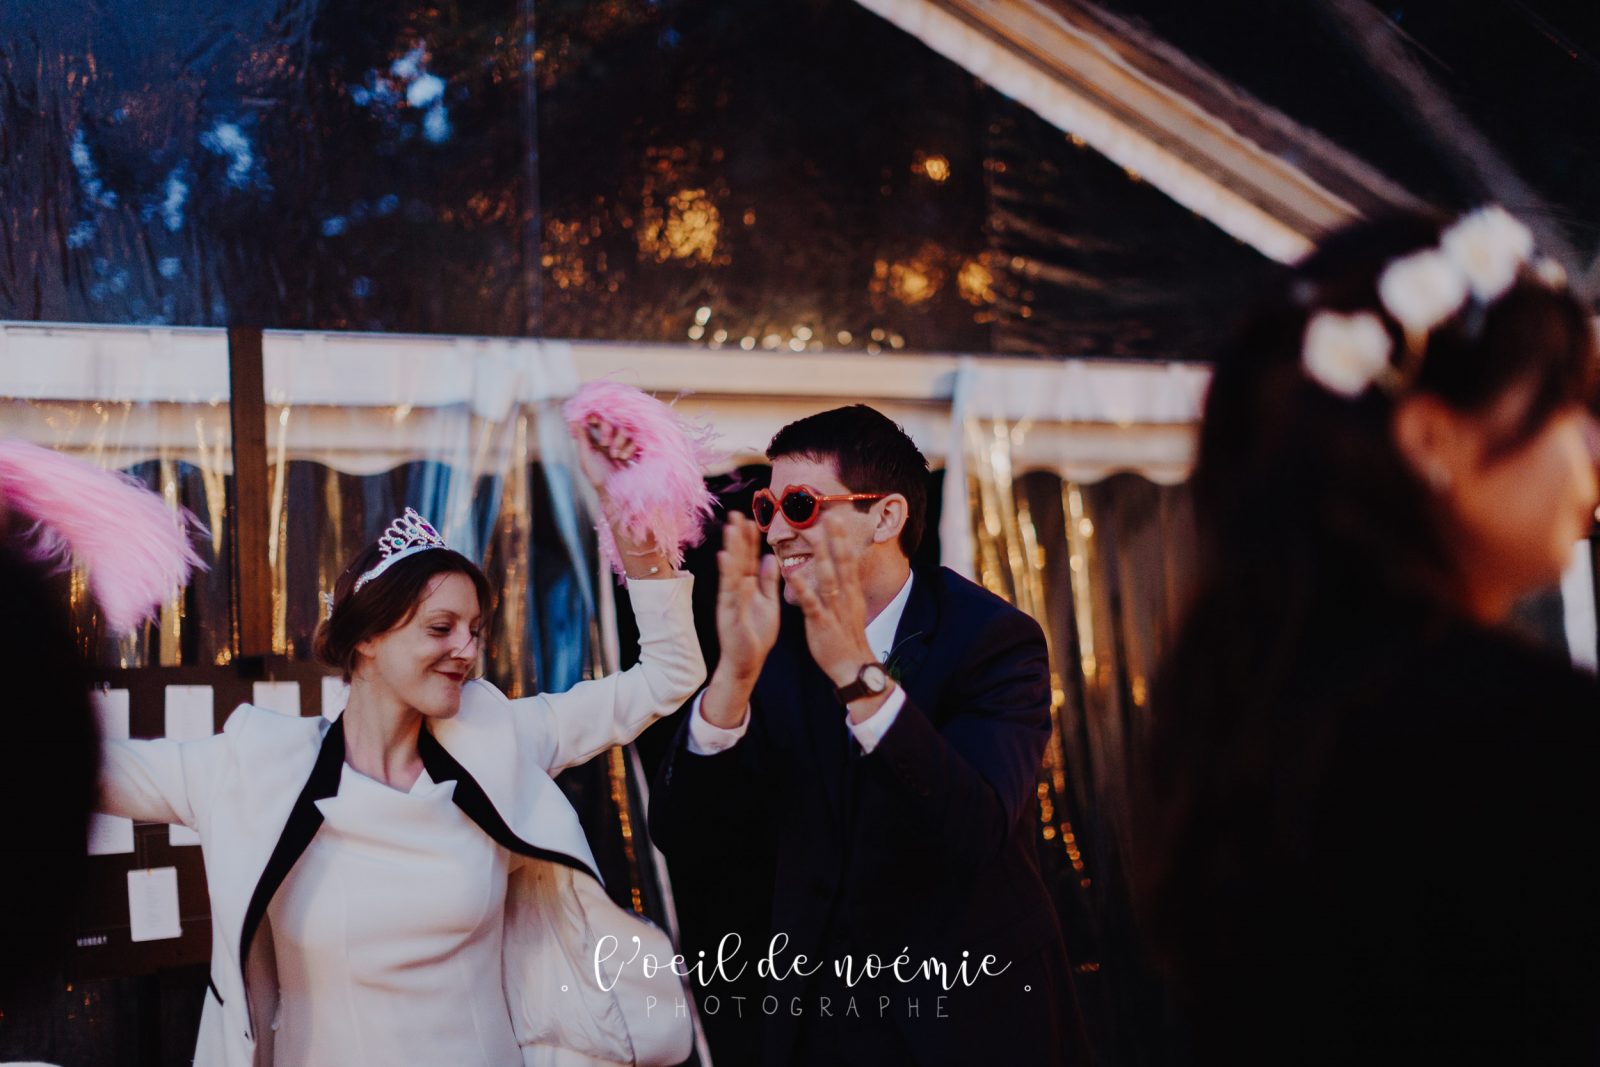 belle photo mariage nature en Auvergne, L'oeil de Noémie élue meilleur photographe de mariage en Auvergne par ZIWA